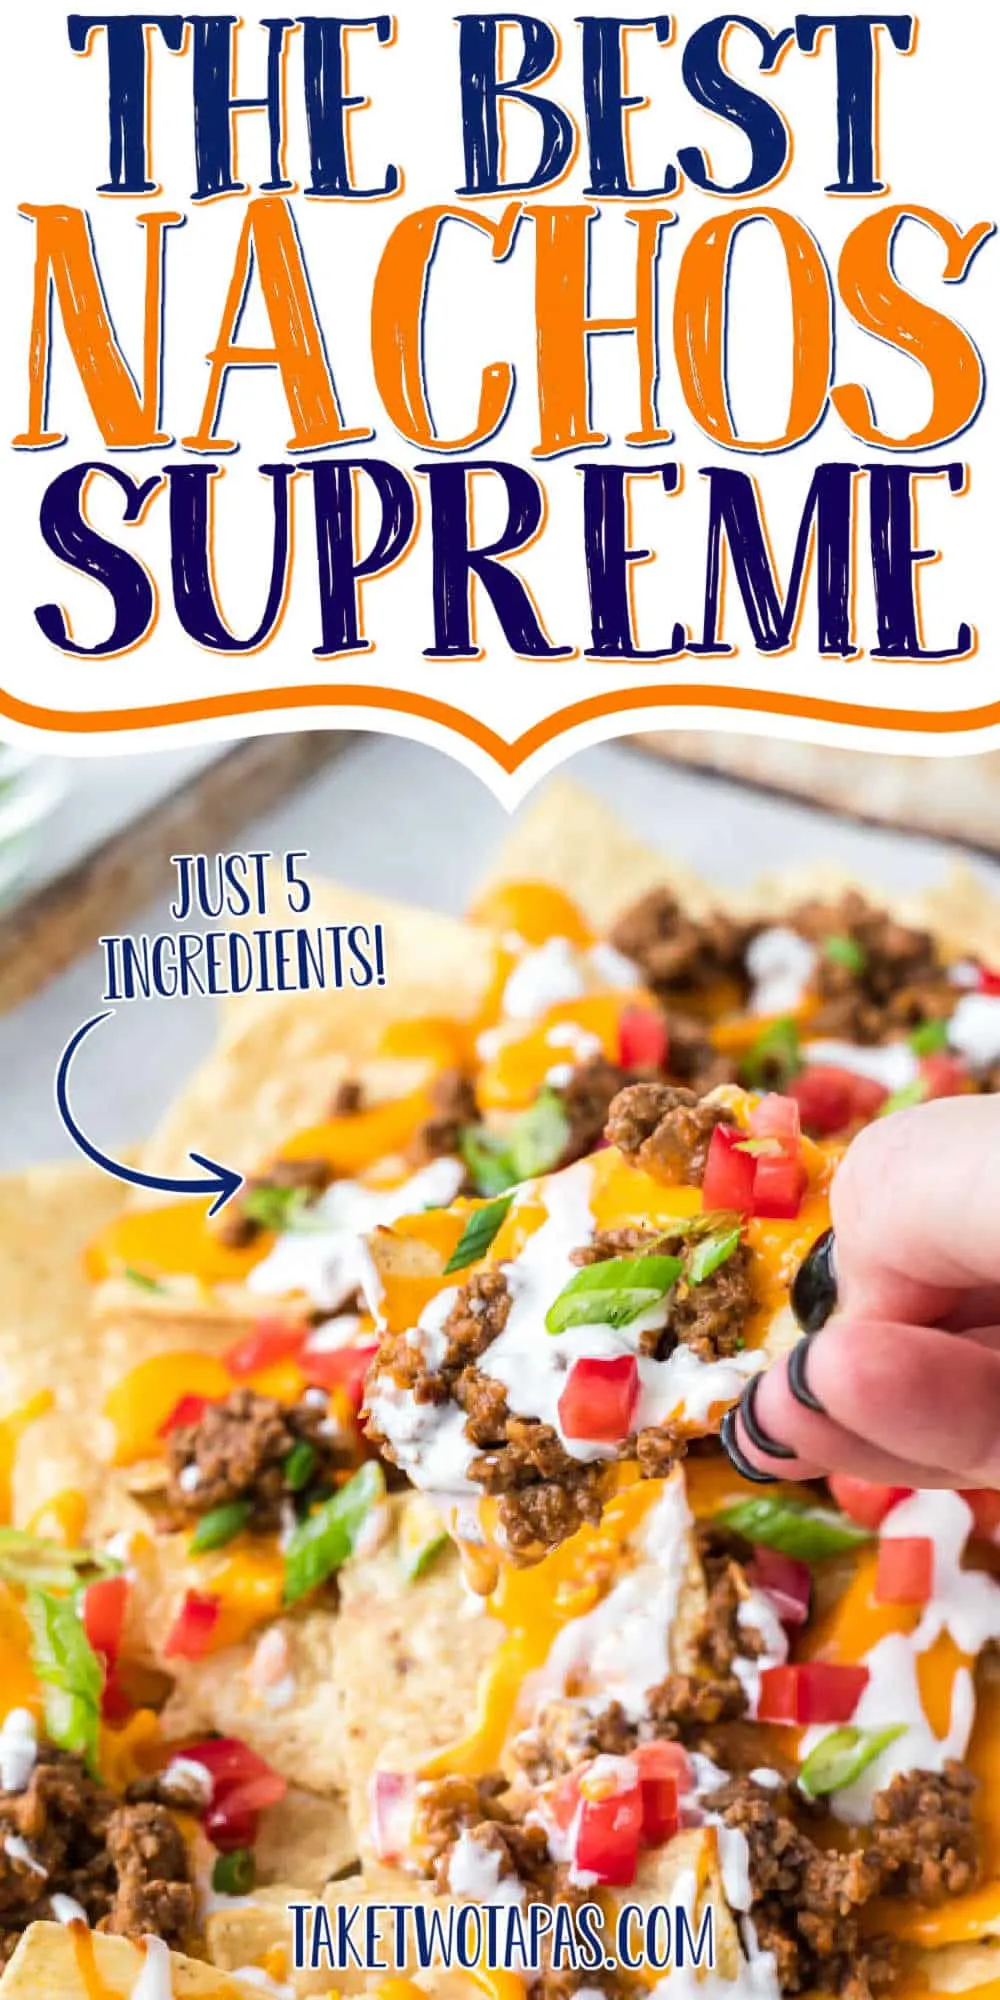 nachos with text 'the best nachos supreme"